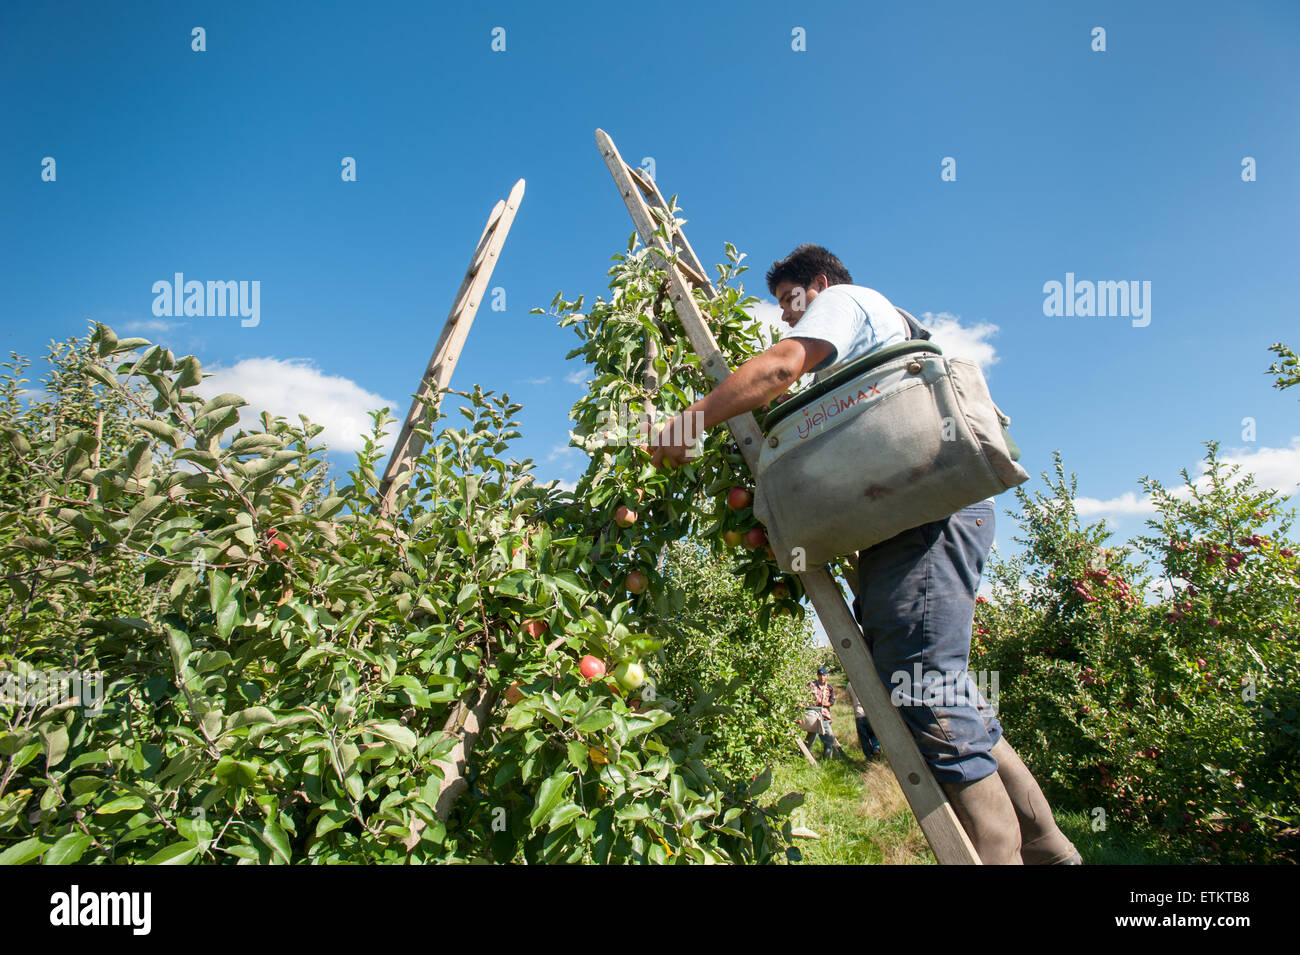 Au travailleur la cueillette des pommes dans un verger Aspers, Pennsylvania, USA Banque D'Images